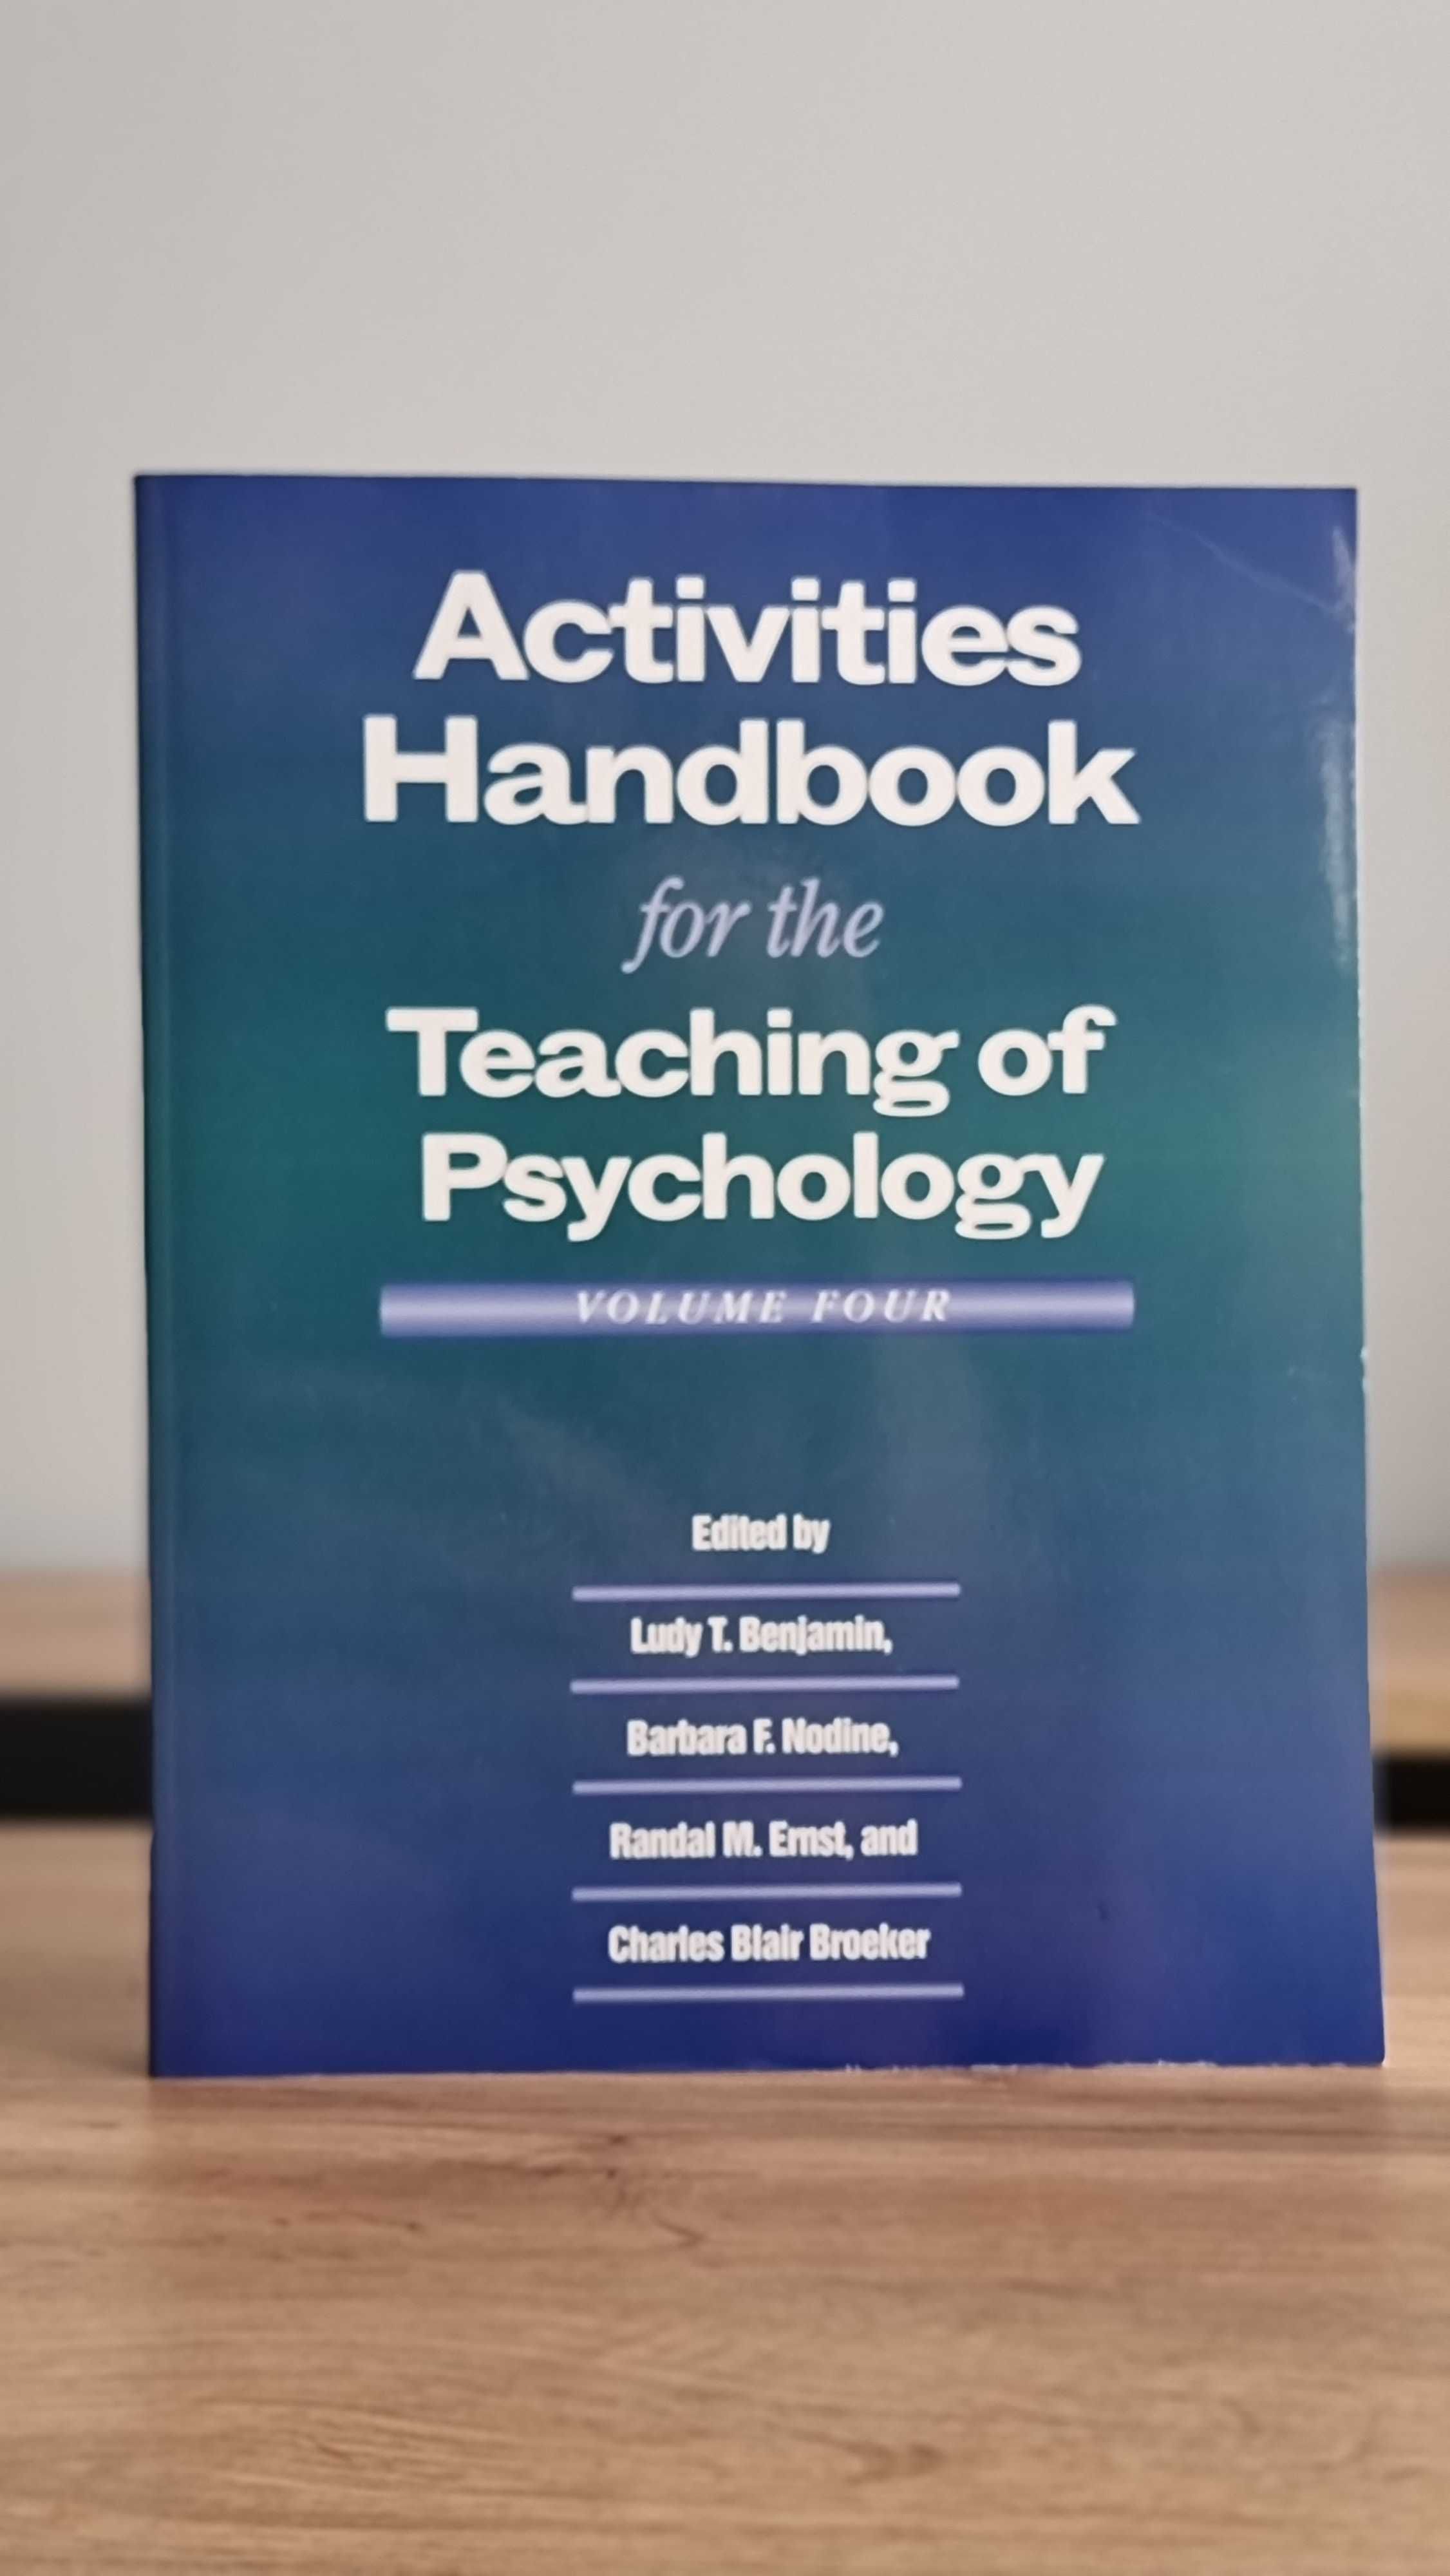 Activities Handbook for the Teaching of Psychology - Benjamin, Nodine